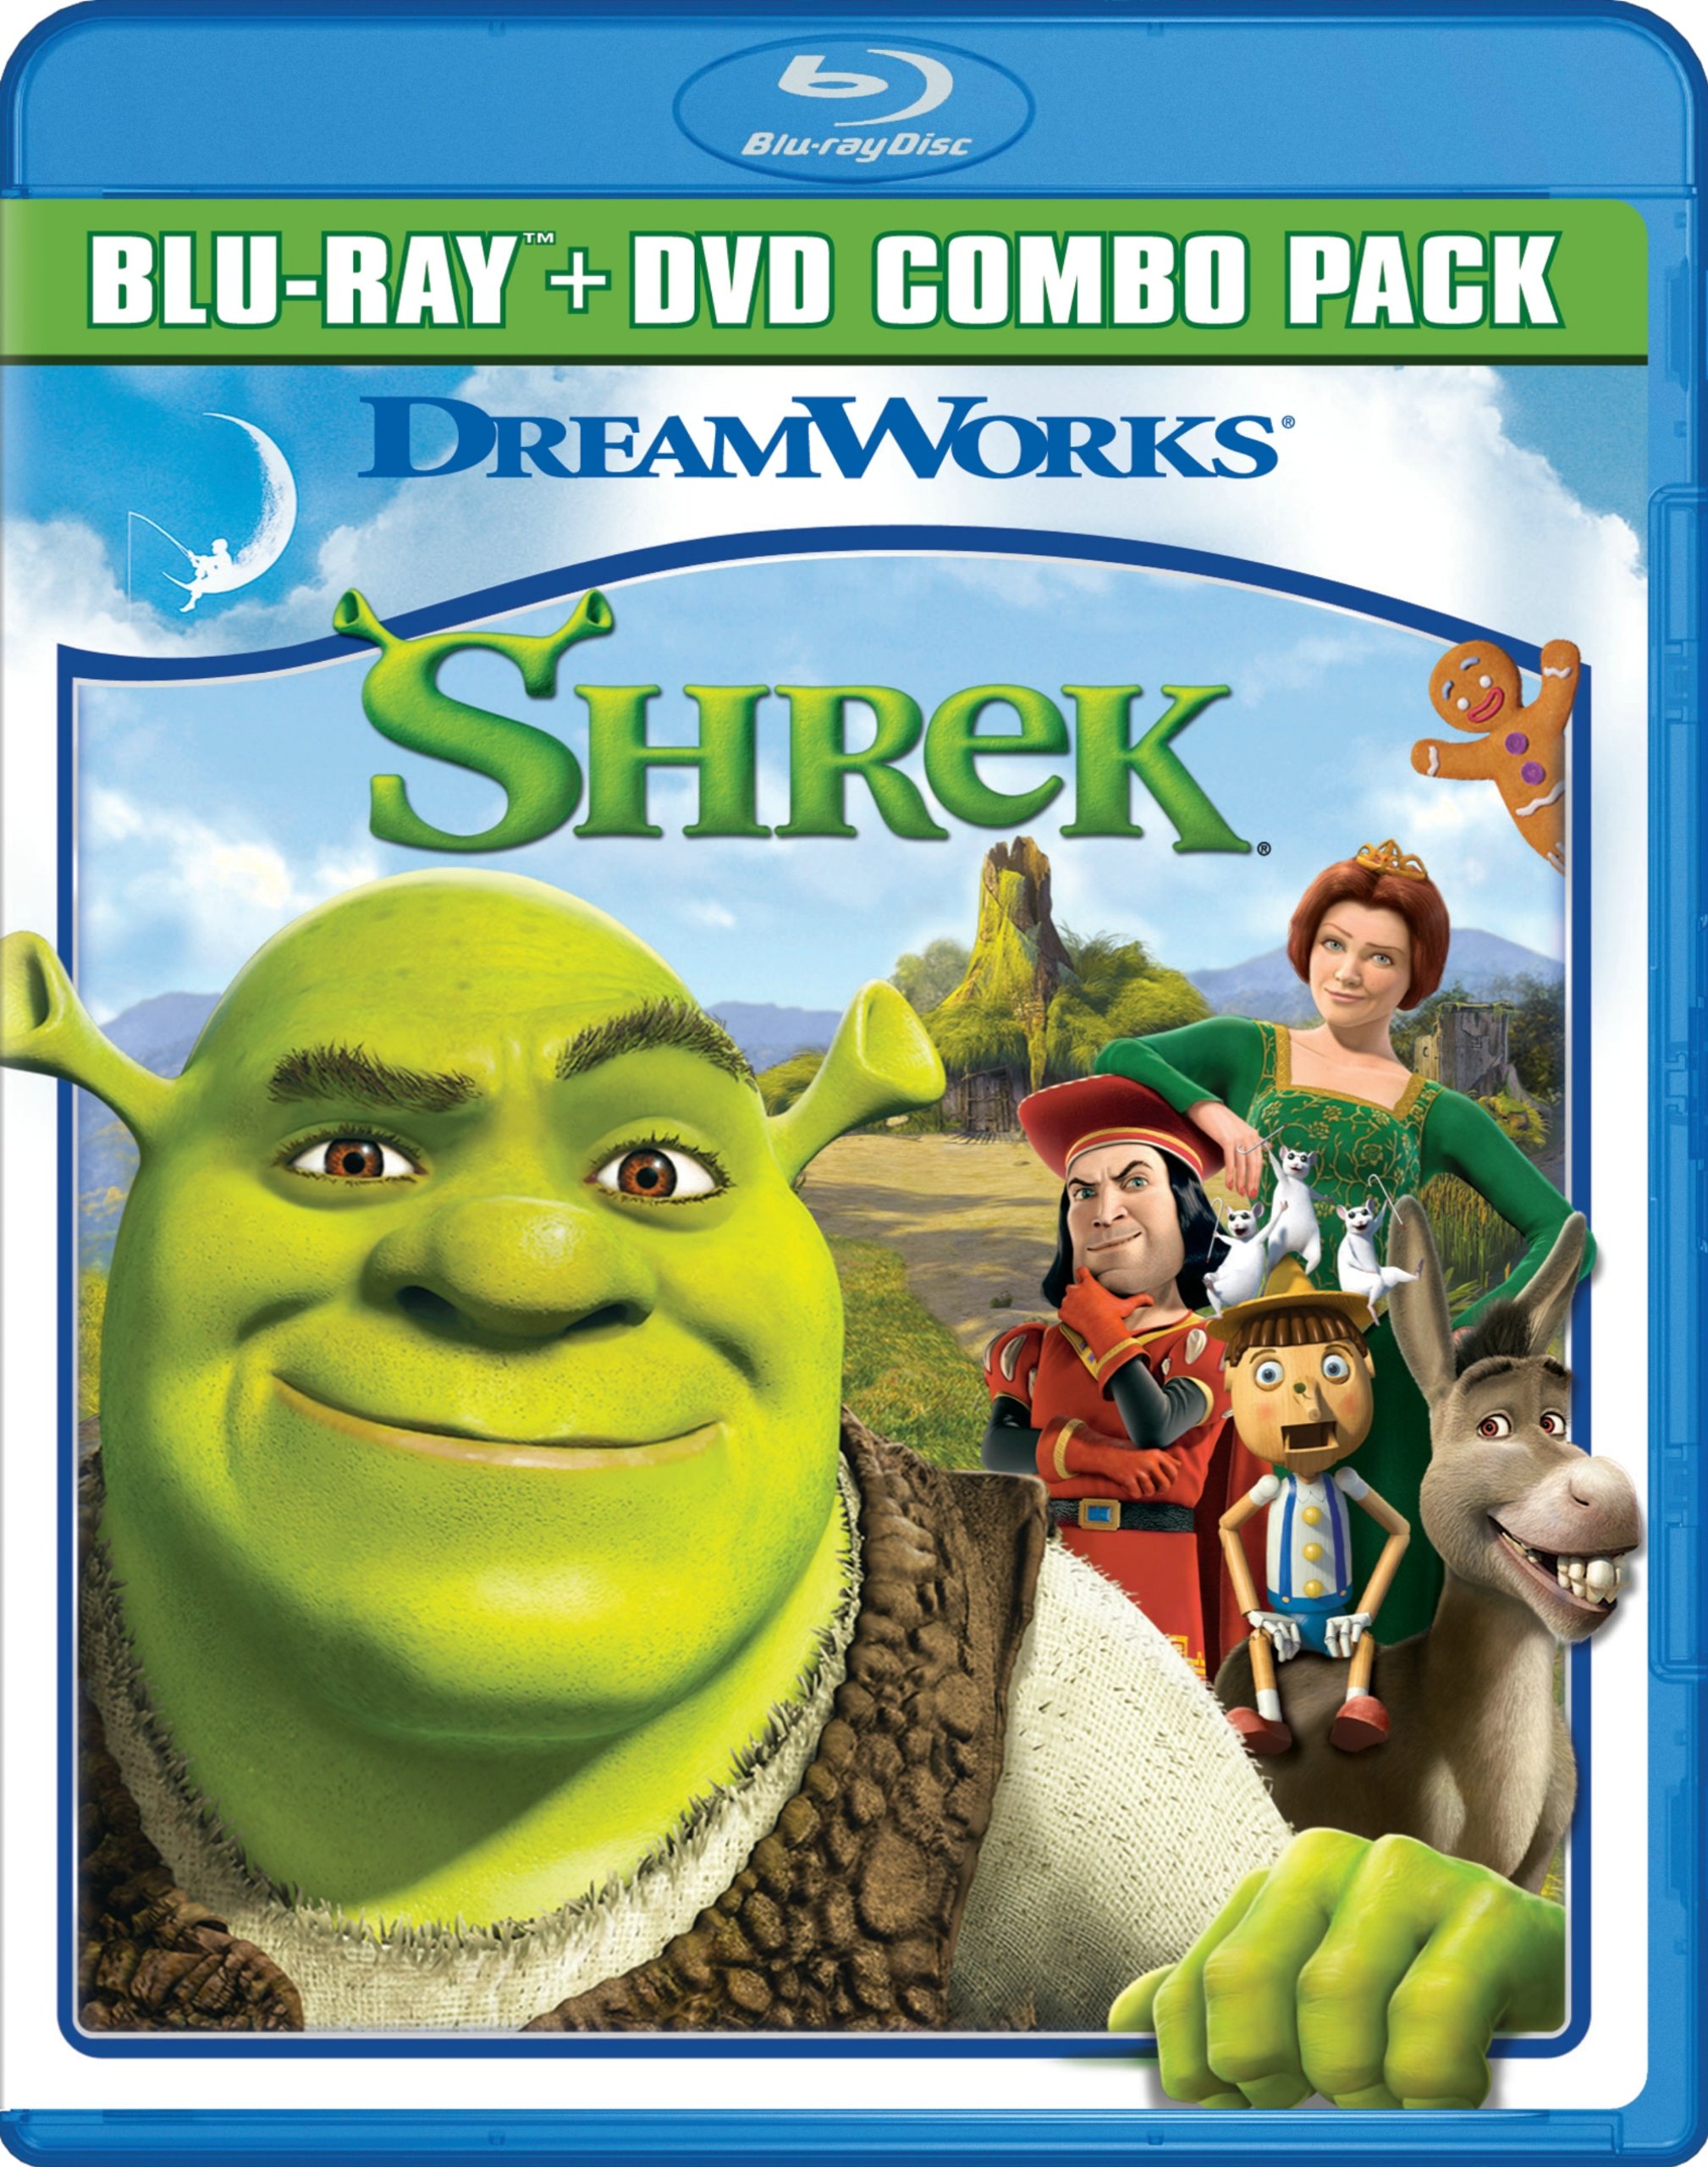 Shrek Dvd Release Date